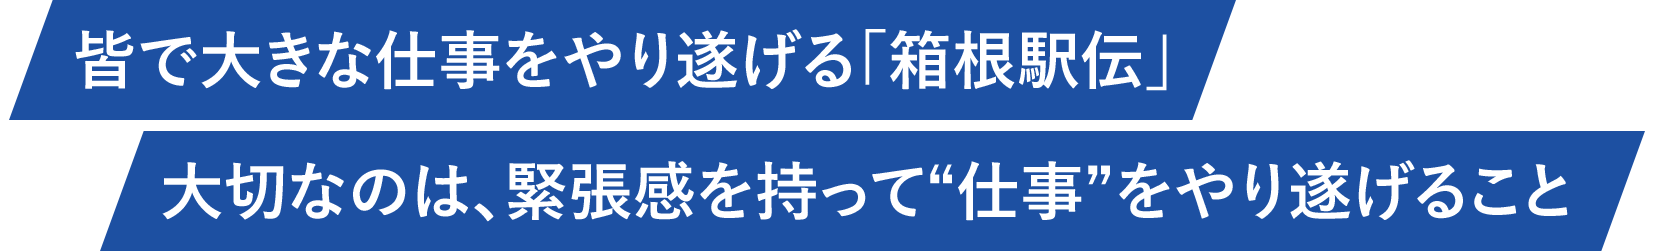 皆で大きな仕事をやり遂げる「箱根駅伝」大切なのは、緊張感を持って“仕事”をやり遂げること